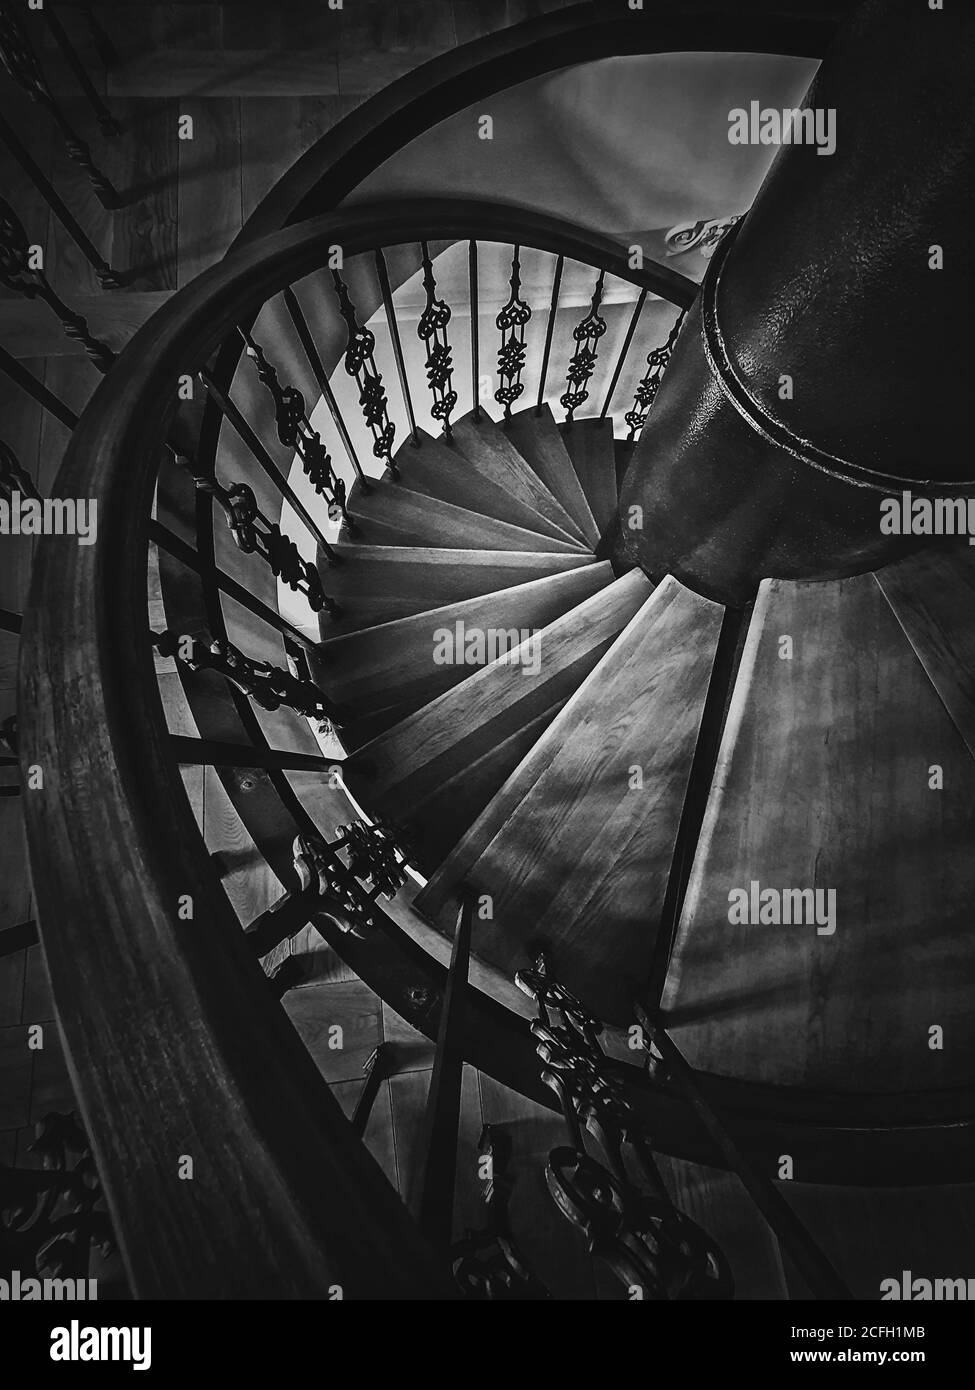 Ein Blick auf eine alte Wendeltreppe. Hölzerne Rundtreppe mit verzierten Metallgeländer, schwarz-weiß vertikale Aufnahme, Innenarchitektur de Stockfoto